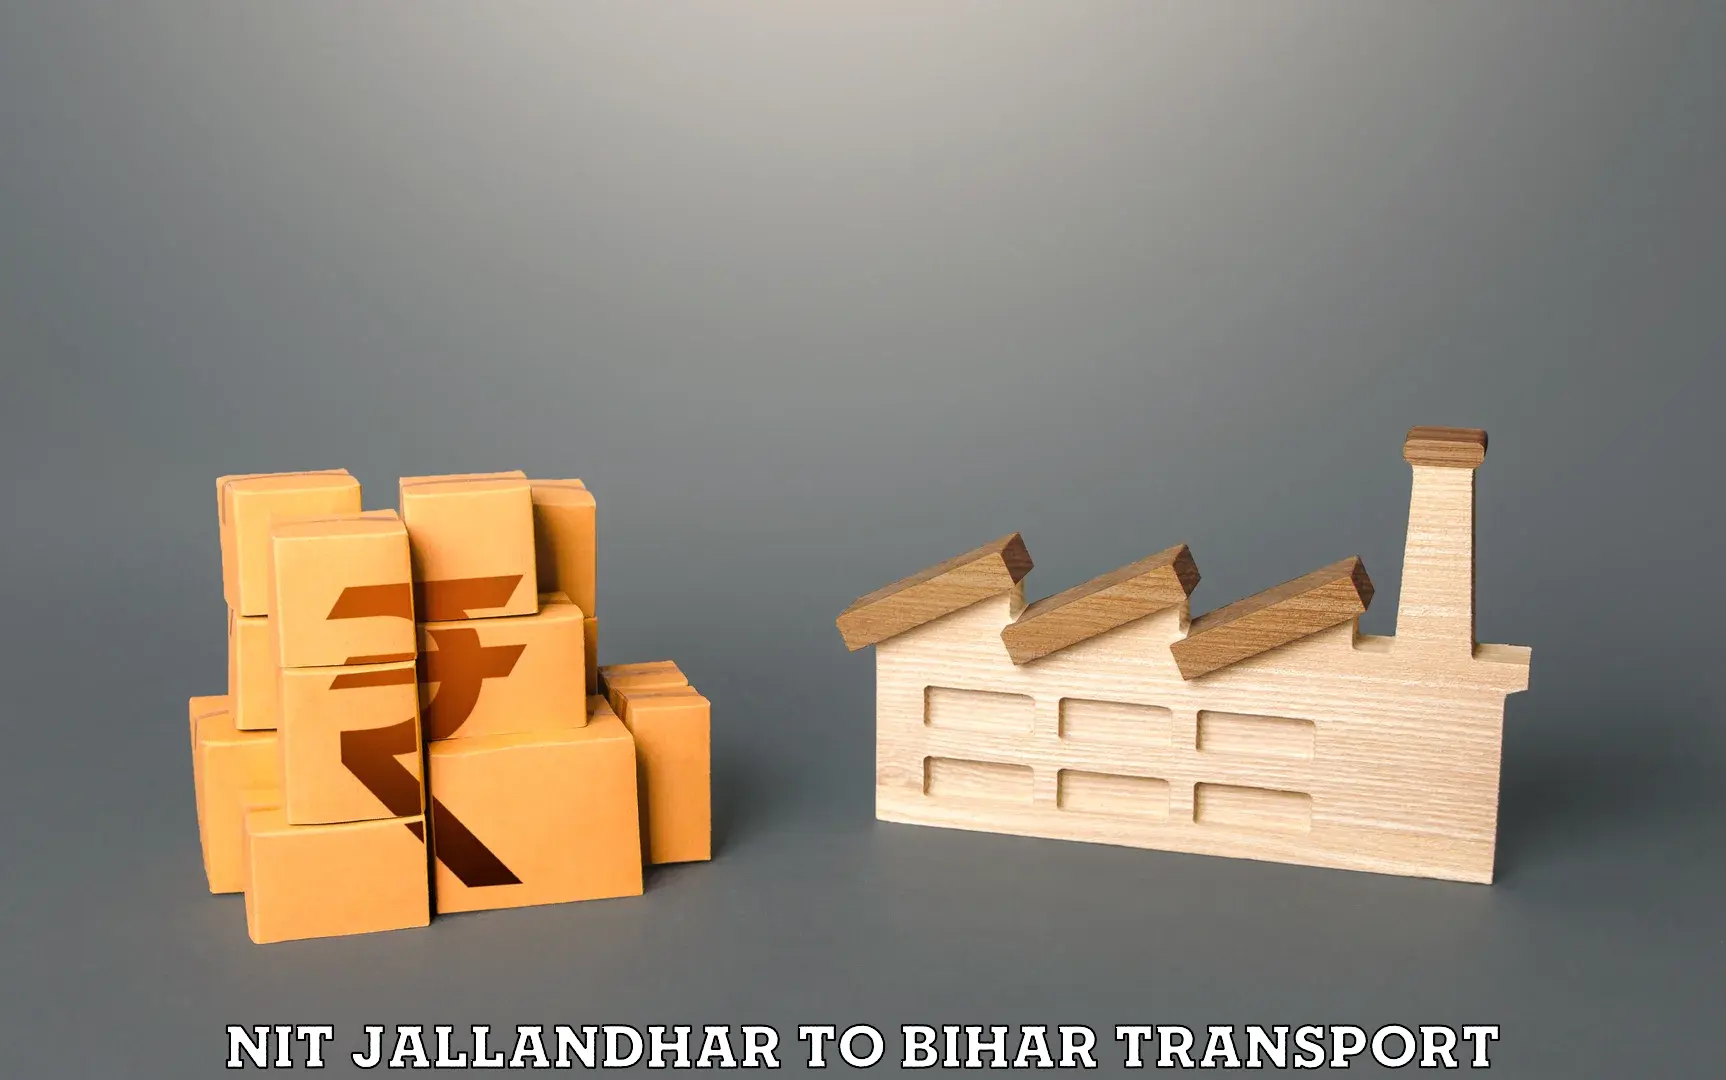 Cycle transportation service NIT Jallandhar to Jaynagar